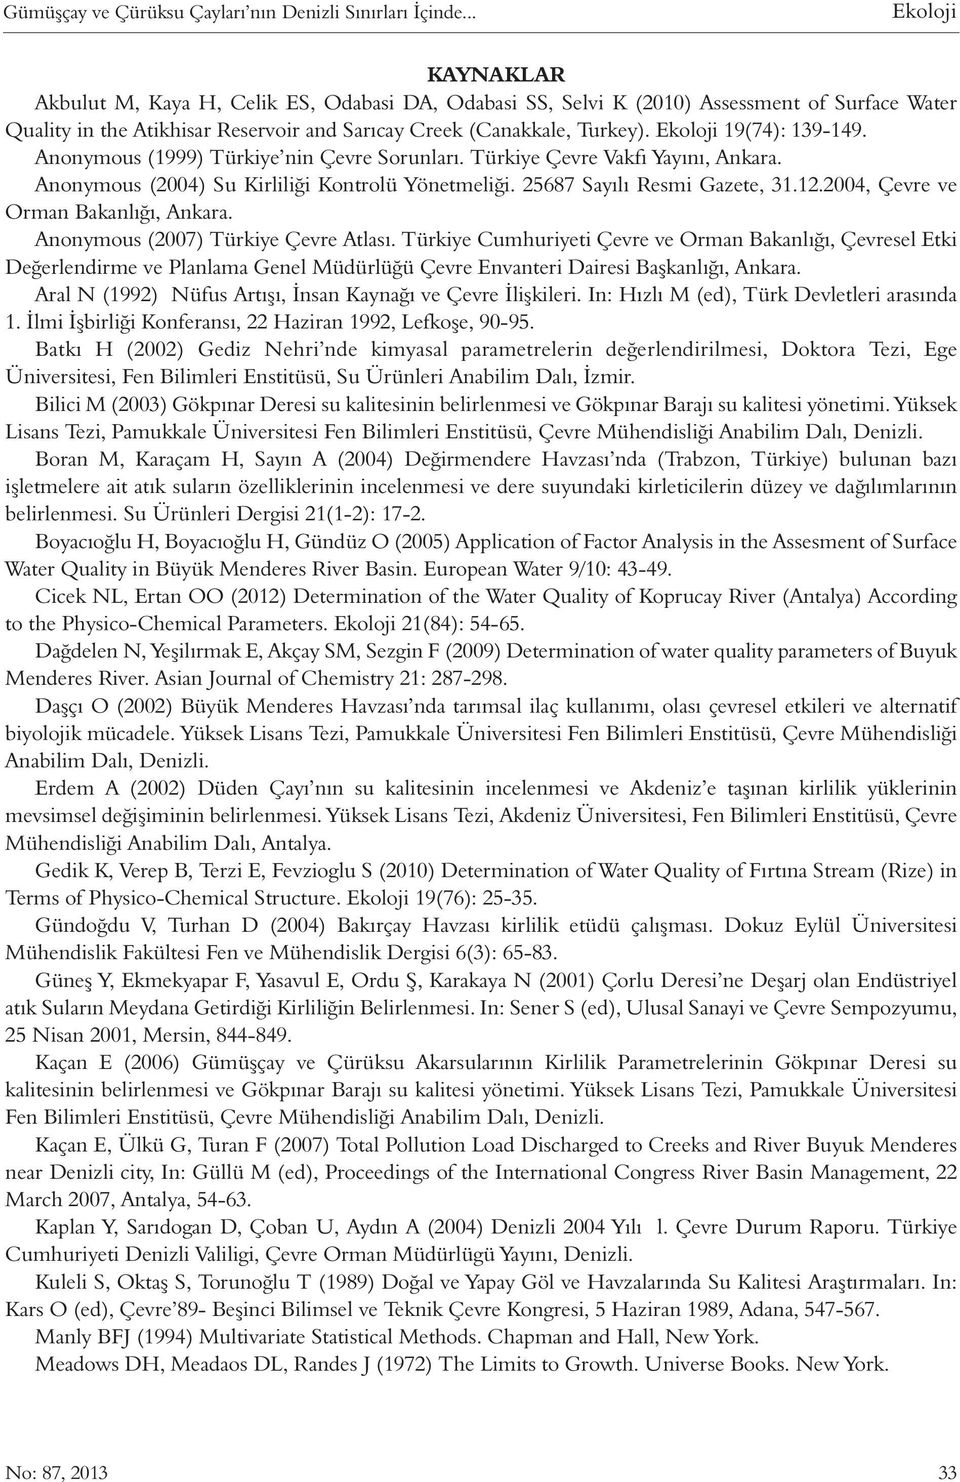 Ekoloji 19(74): 139-149. Anonymous (1999) Türkiye nin Çevre Sorunları. Türkiye Çevre Vakfı Yayını, Ankara. Anonymous (2004) Su Kirliliği Kontrolü Yönetmeliği. 25687 Sayılı Resmi Gazete, 31.12.